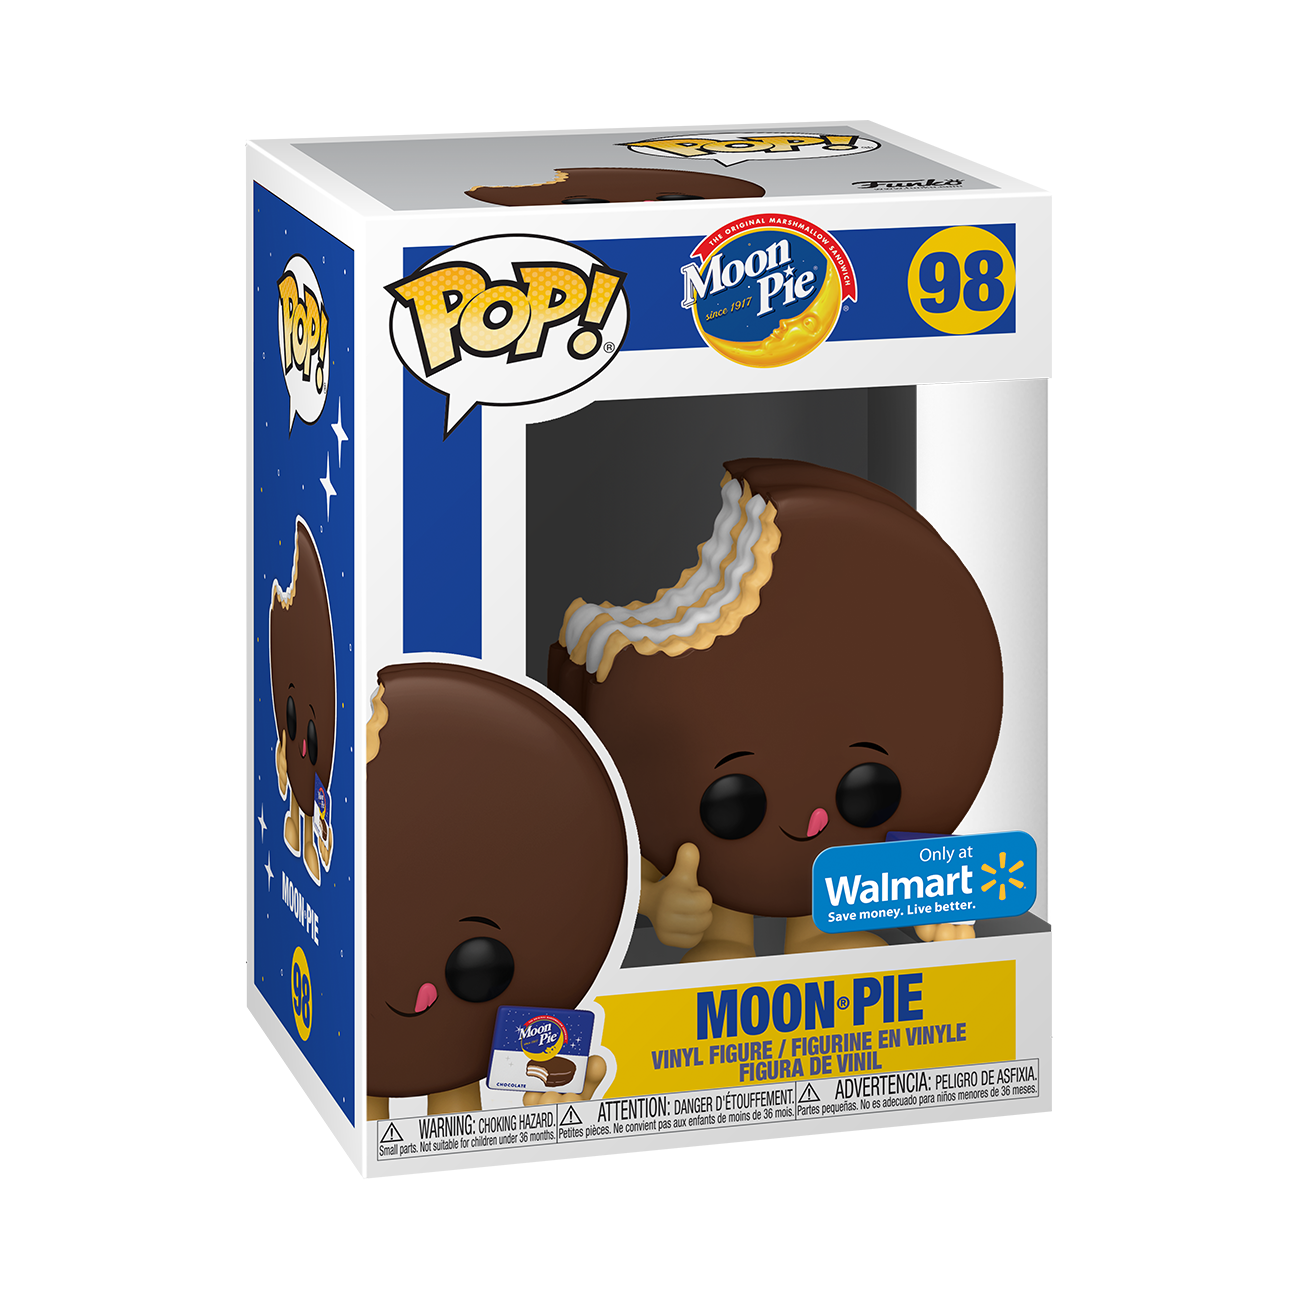 Funko Pop! Vinyl Figure Foodies: Moon Pie - Moon Pie - Walmart Exclusive - image 2 of 6